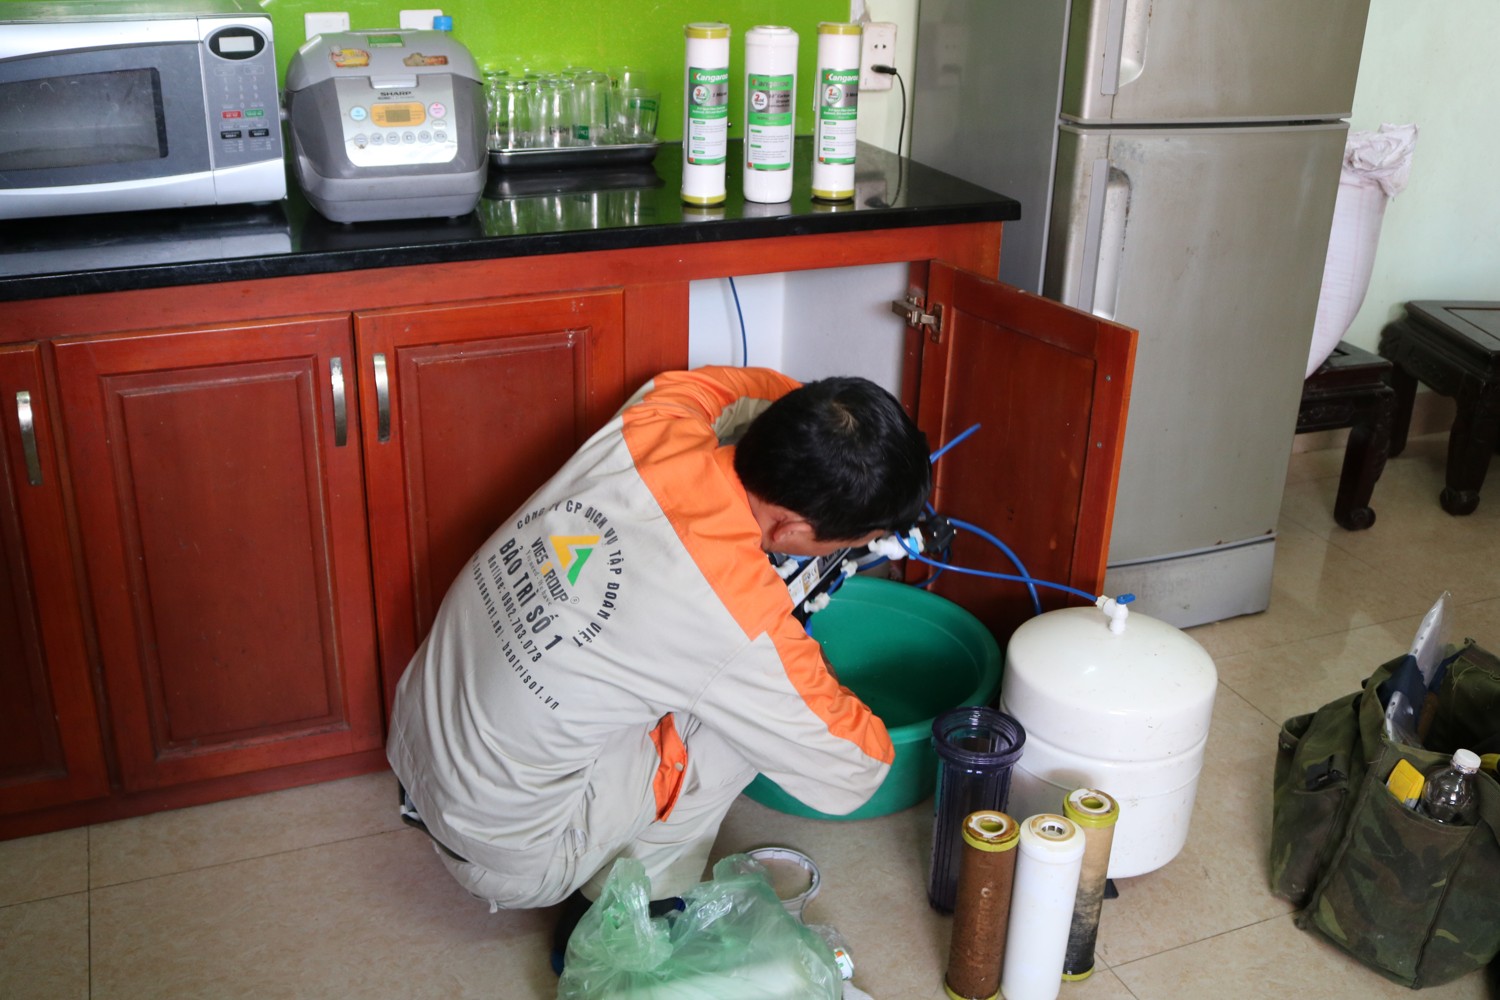 Chuyên Gia Sửa Chữa chúng tôi xin cam kết dịch vụ thay lõi lọc nước giá rẻ uy tín tại Hà Nội 